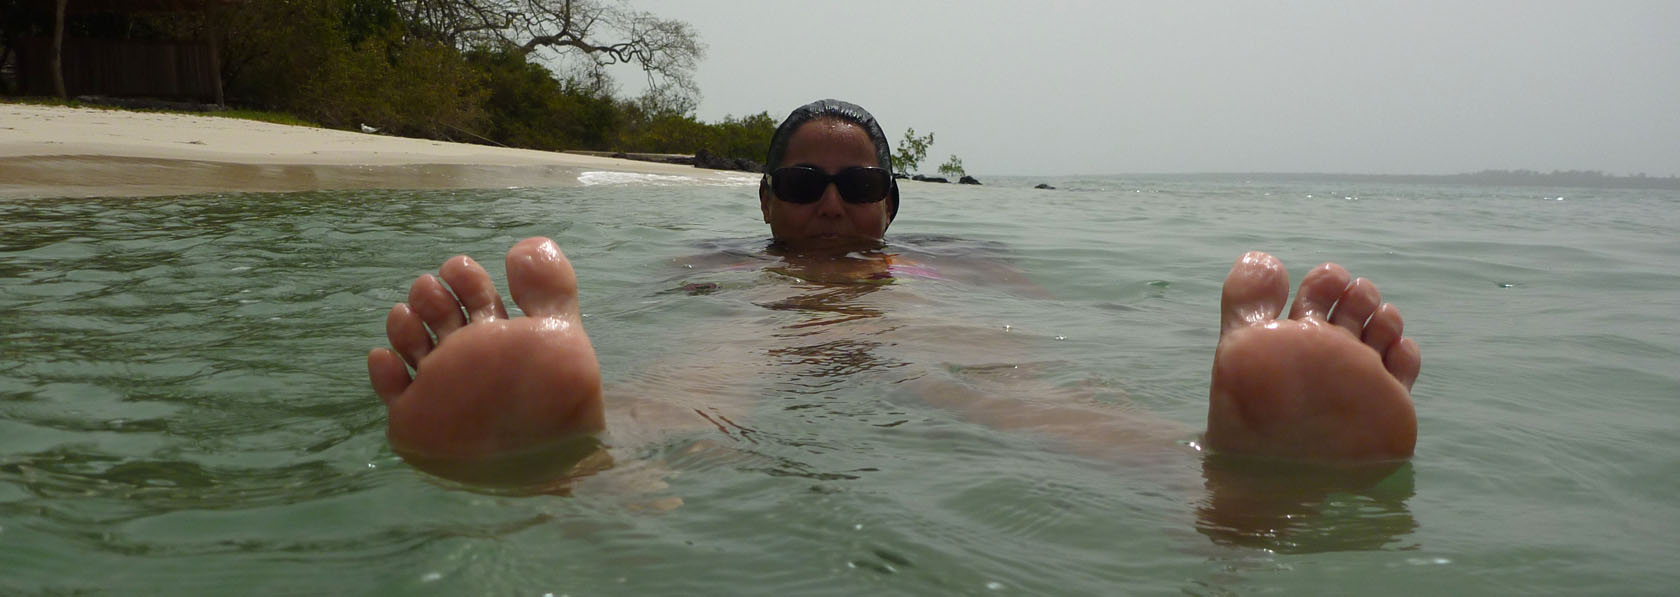 baigande au calme dans les eaux turquoise de kere